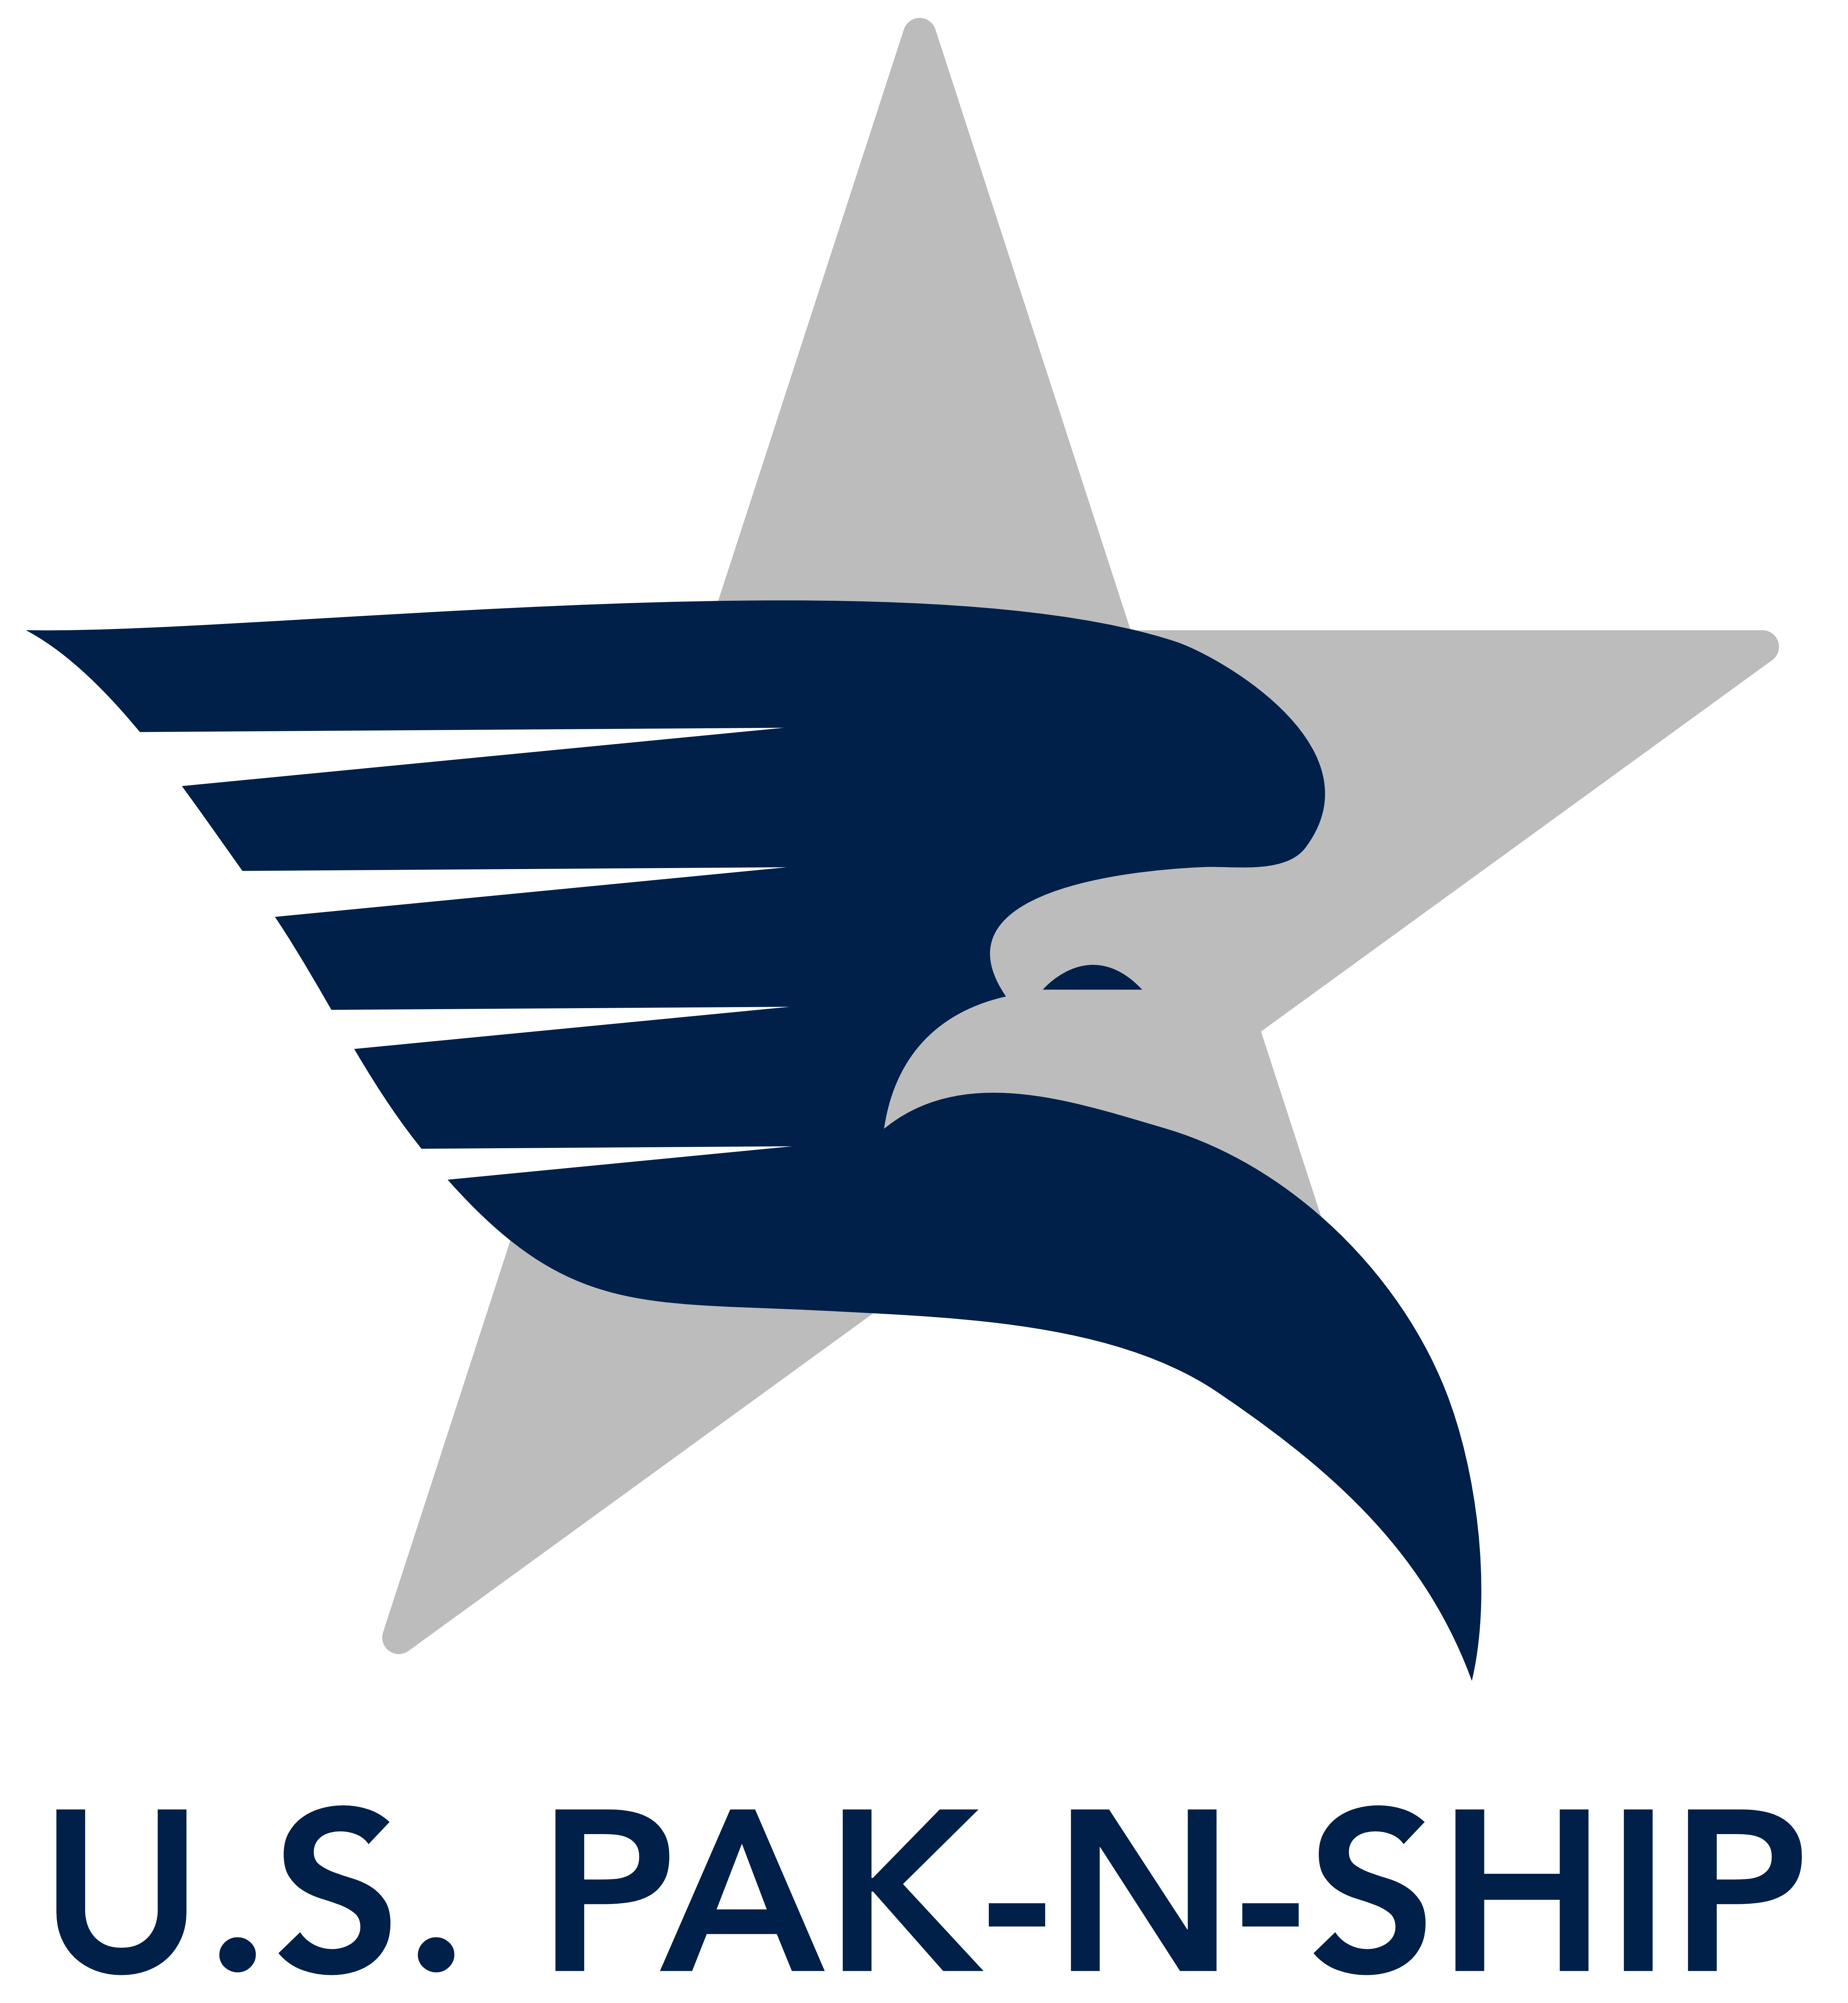 U.S. PAK-N-SHIP